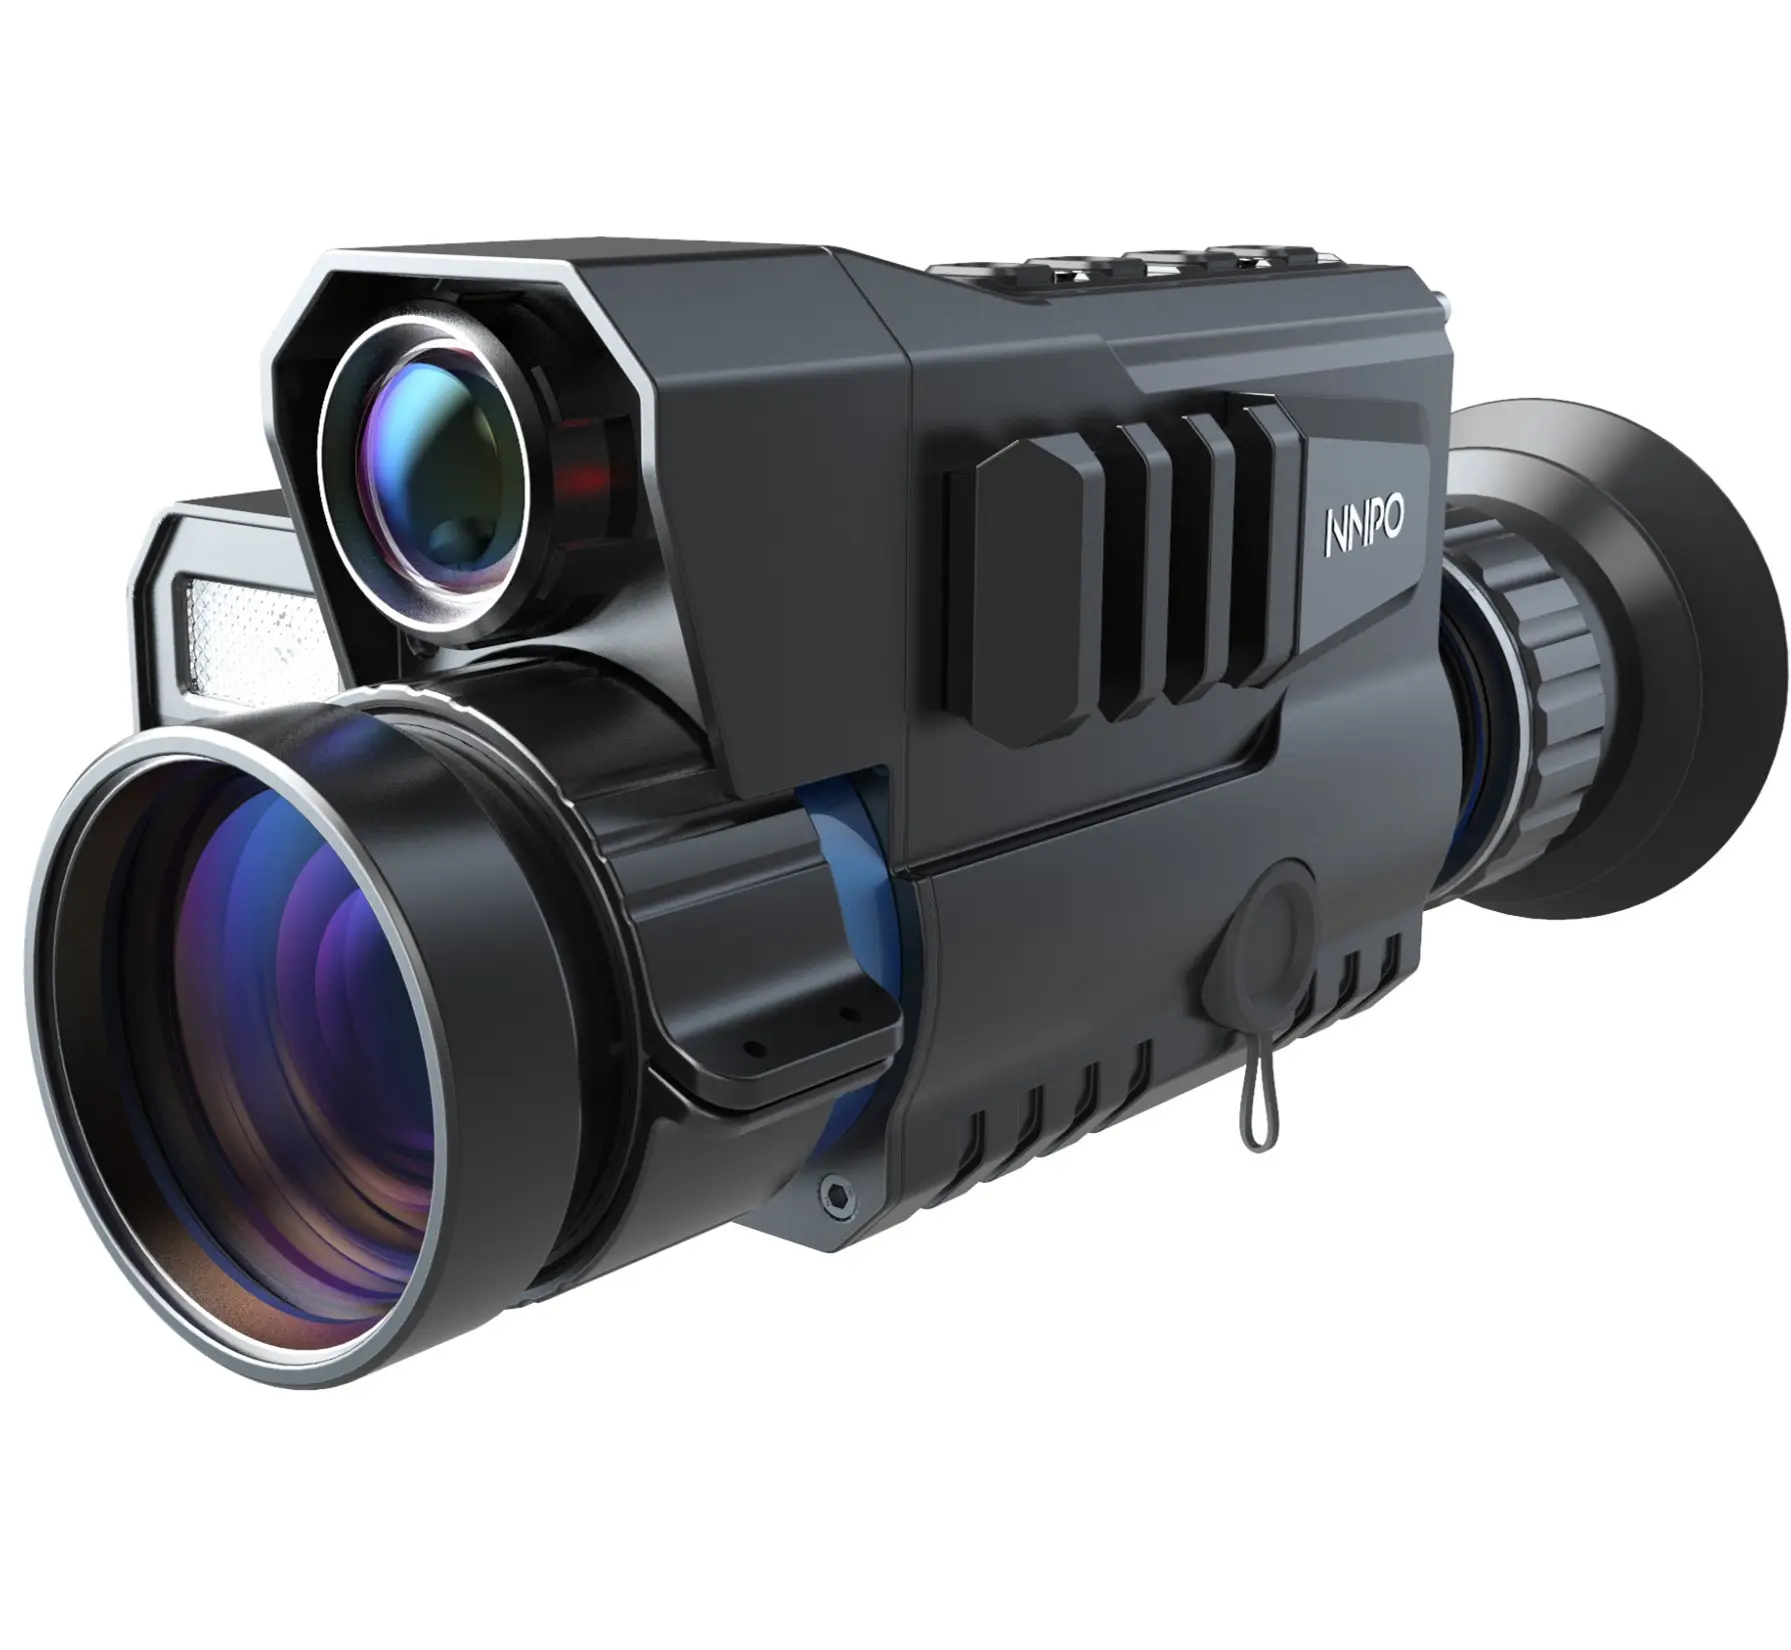 Sungusoutdoors Nnpo Handheld Thermische Imaging Scope Nachtkijker Thermische Bril Camera Met 25/35Mm Lens Voor Jacht